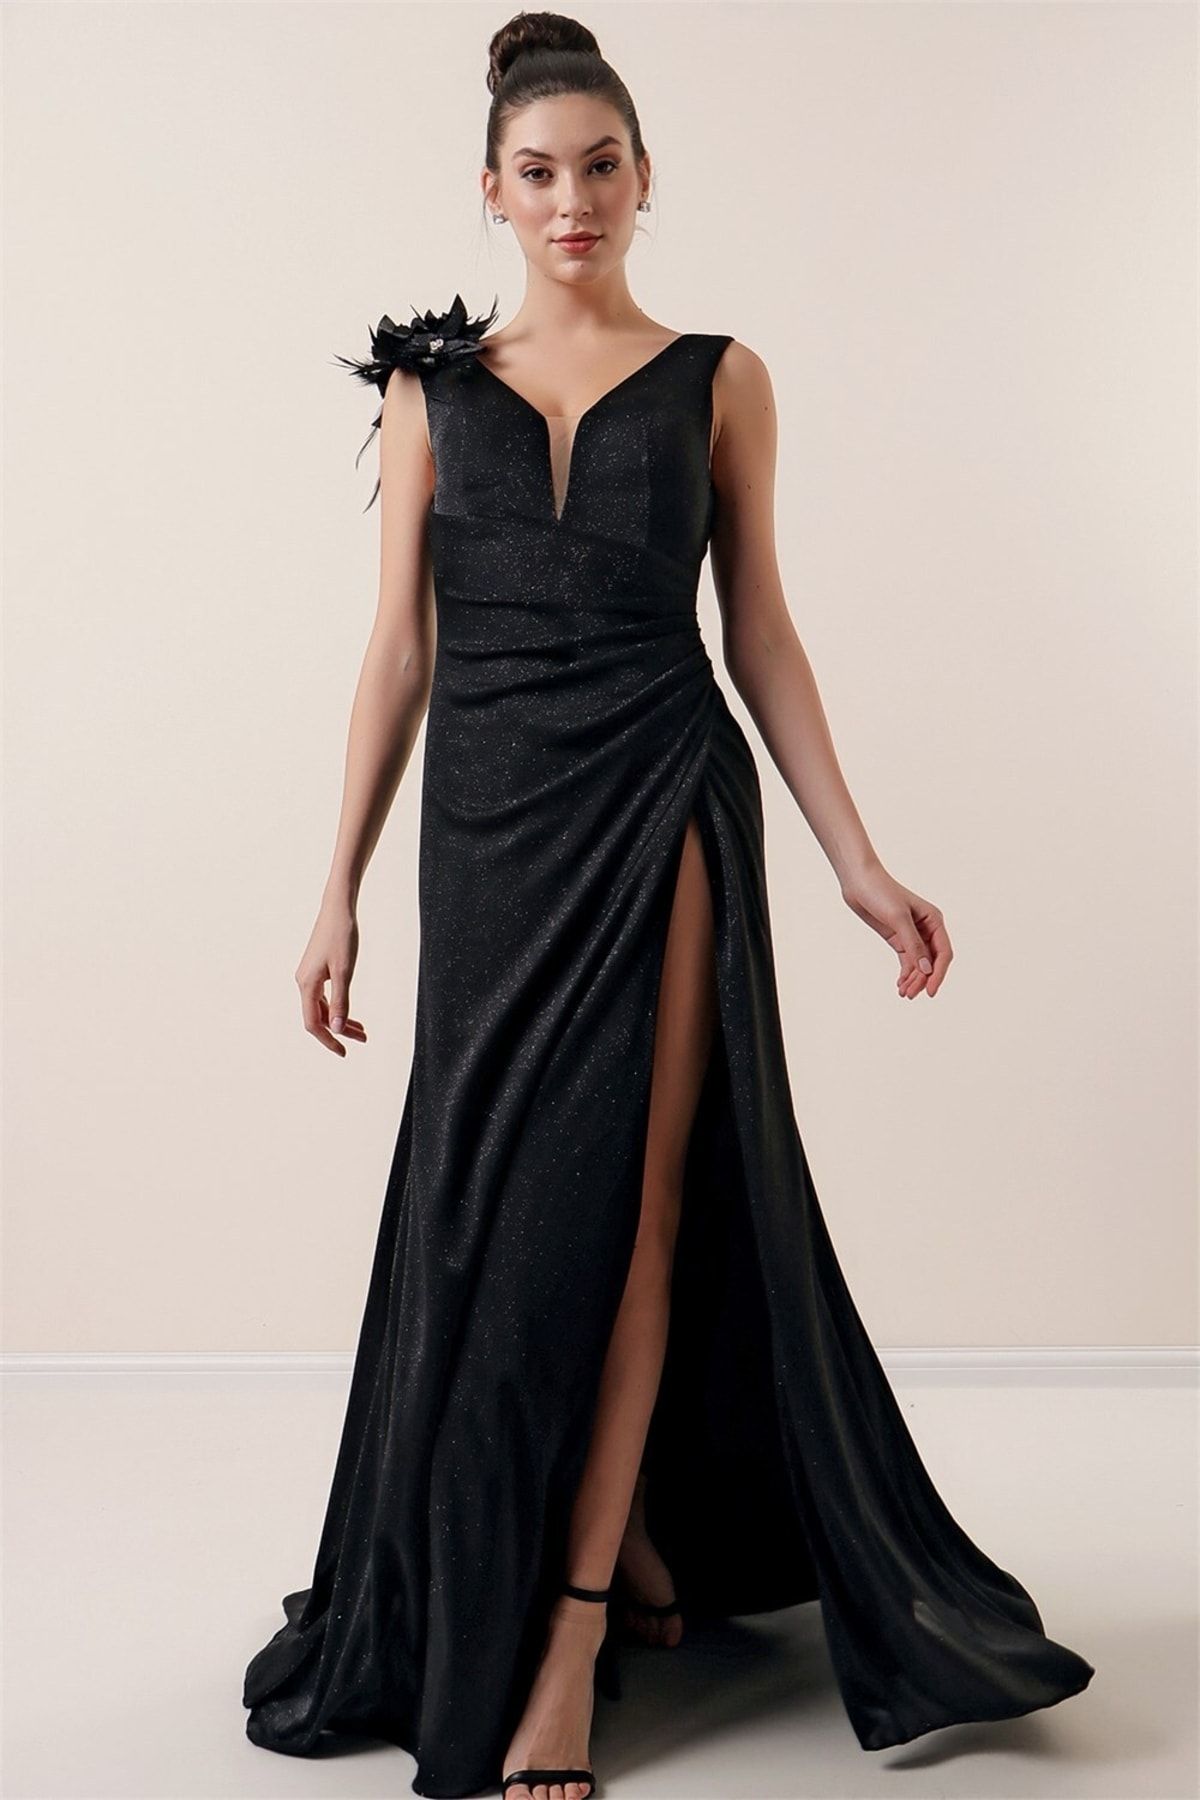 By Saygı Tek Omuz 3 Boyut Çiçekli Yanı Ve Arkası Büzgülü Astarlı Simli Uzun Portofino Elbise Siyah